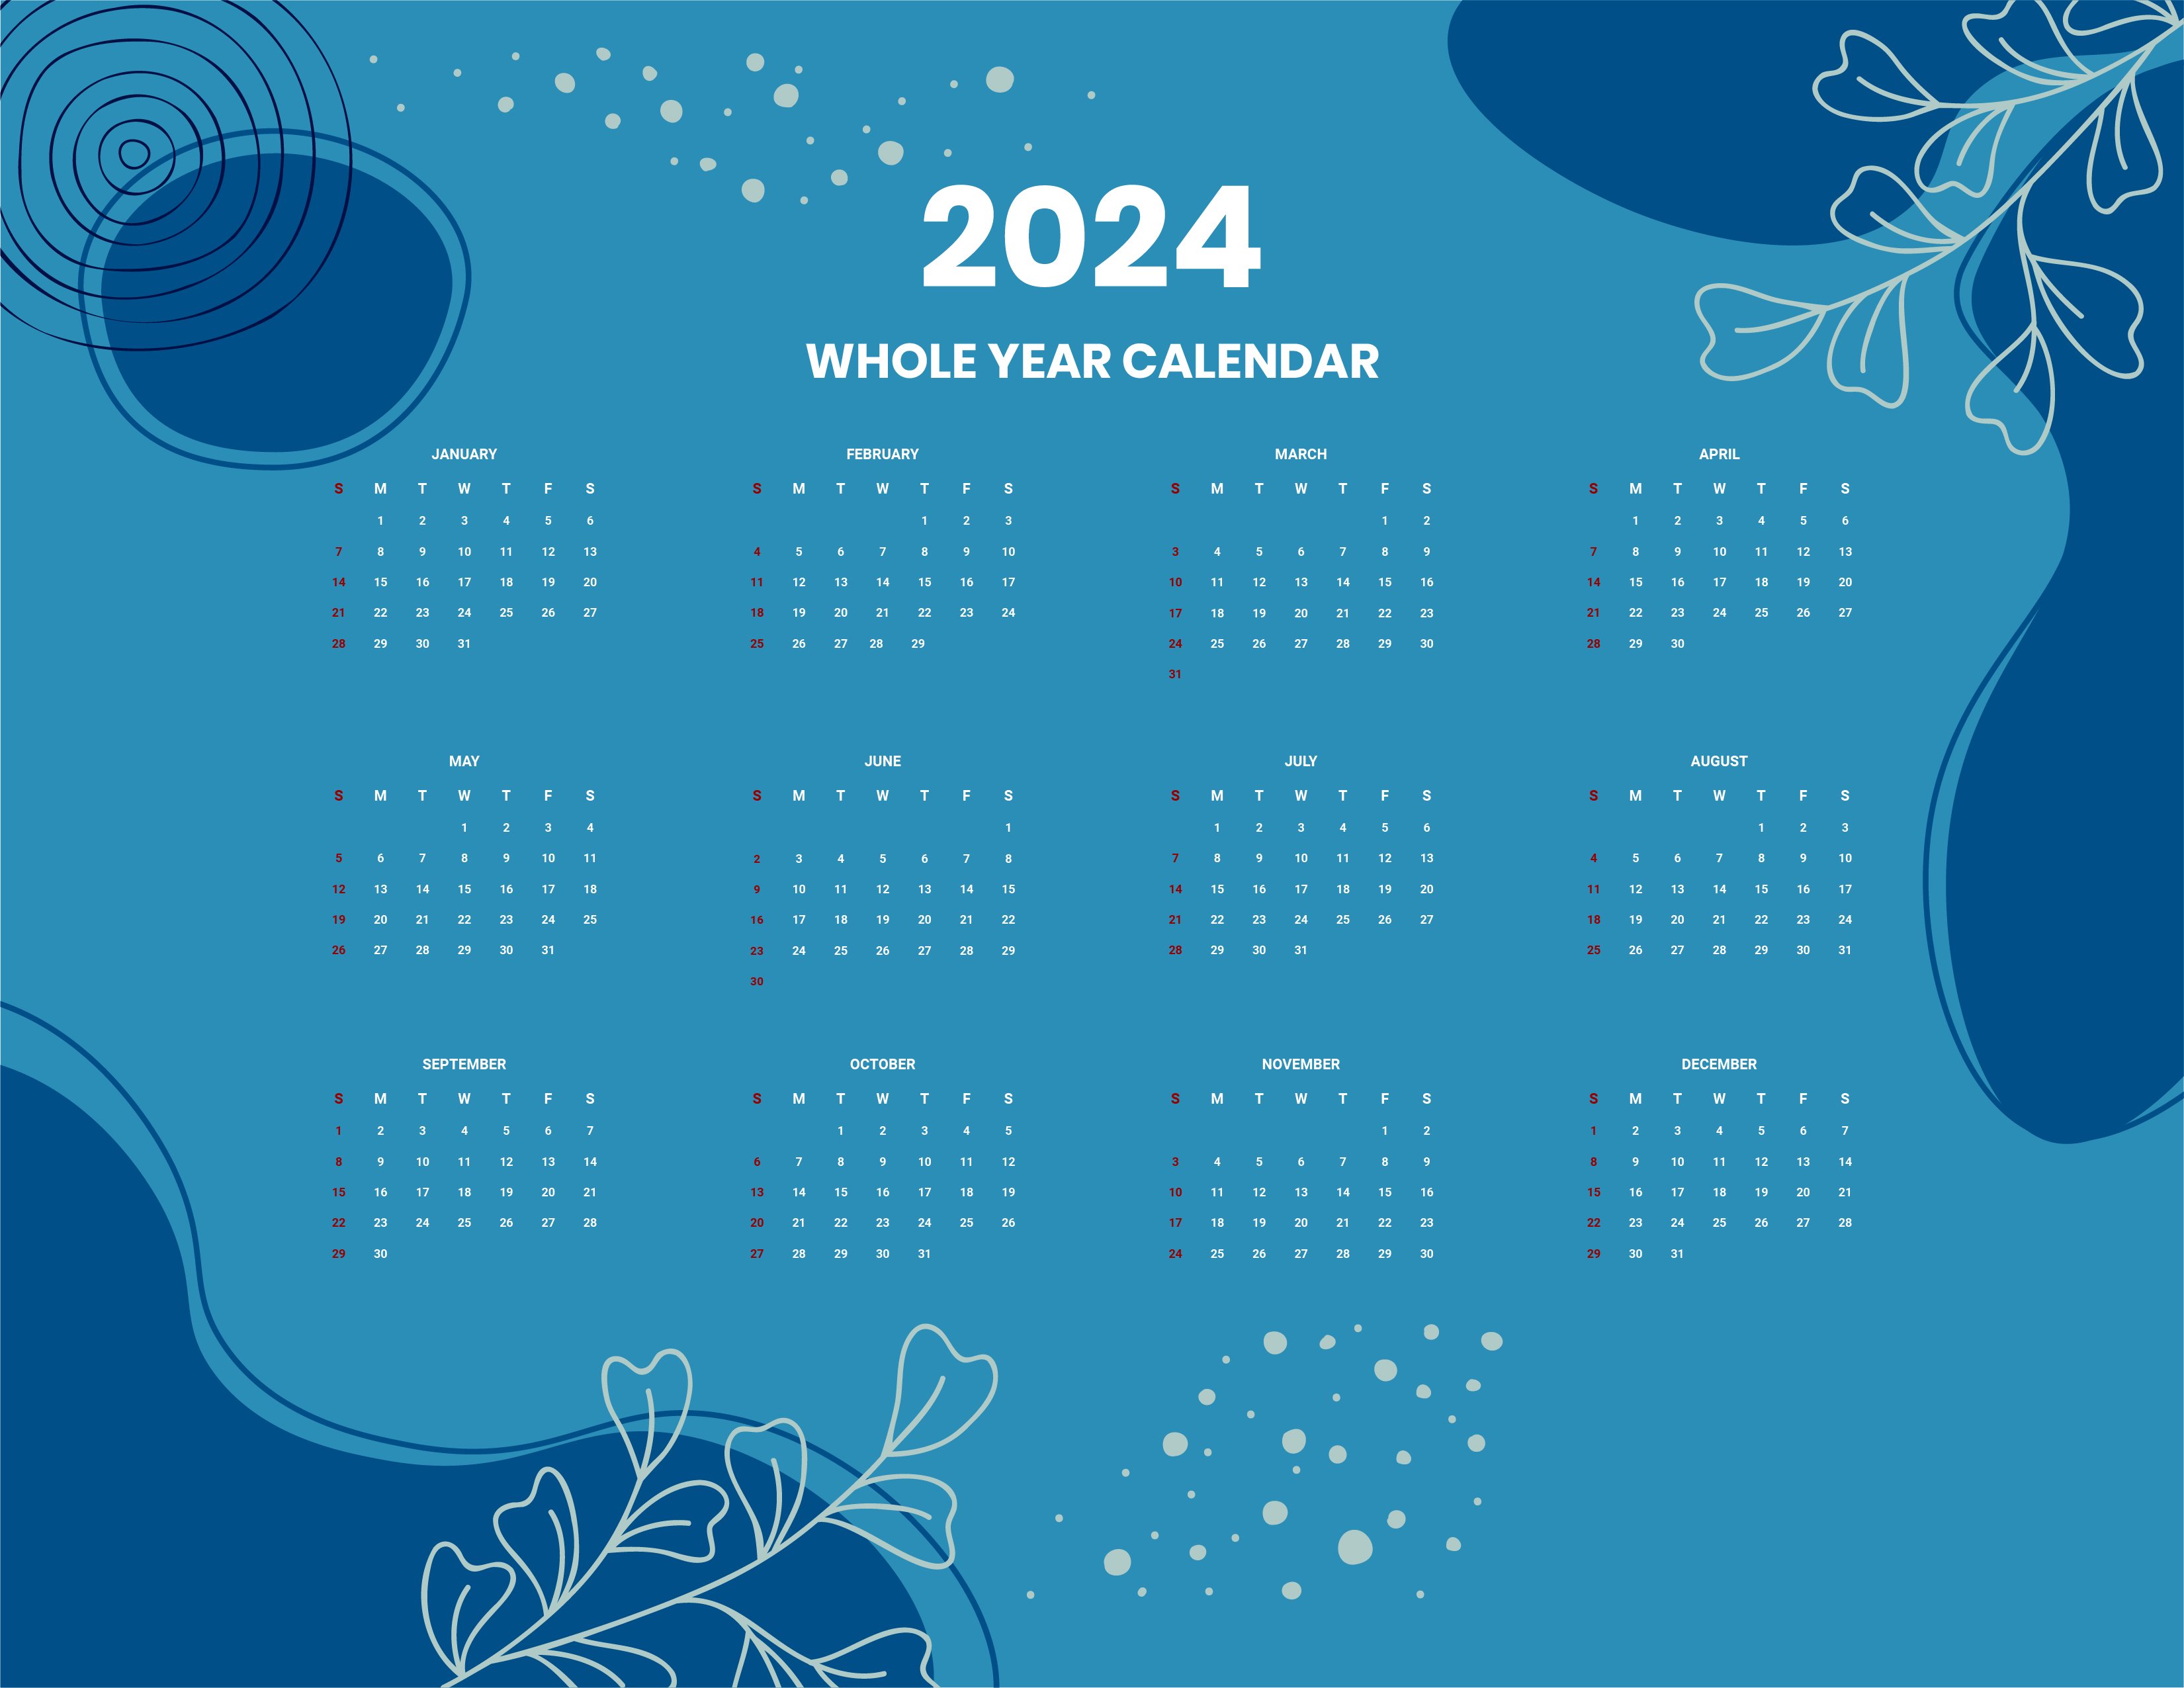 Calendar 2024 Template Word